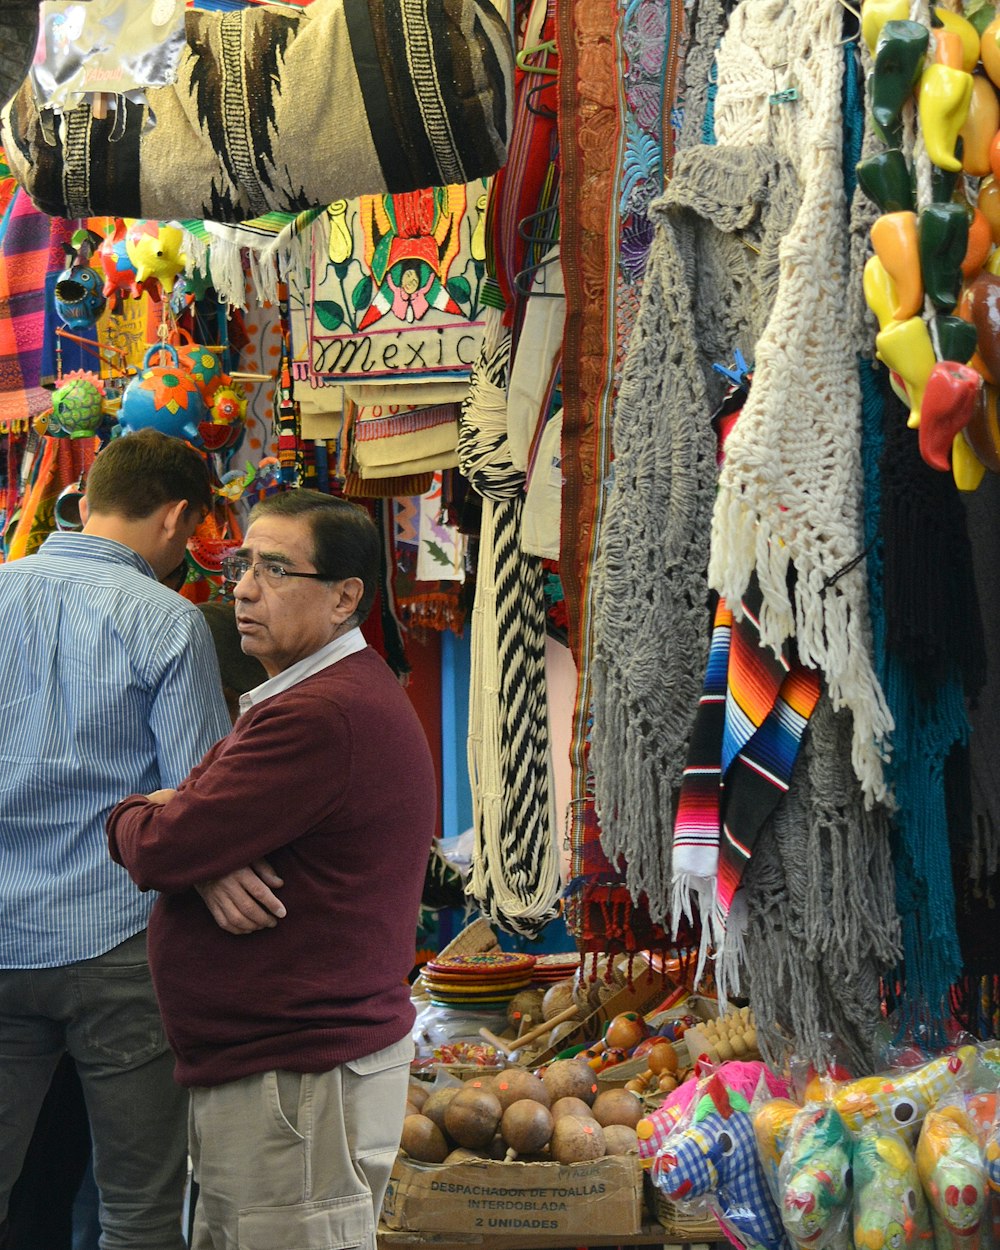 적갈색 스웨터를 입은 남자가 여러 신발 앞에 서 있다